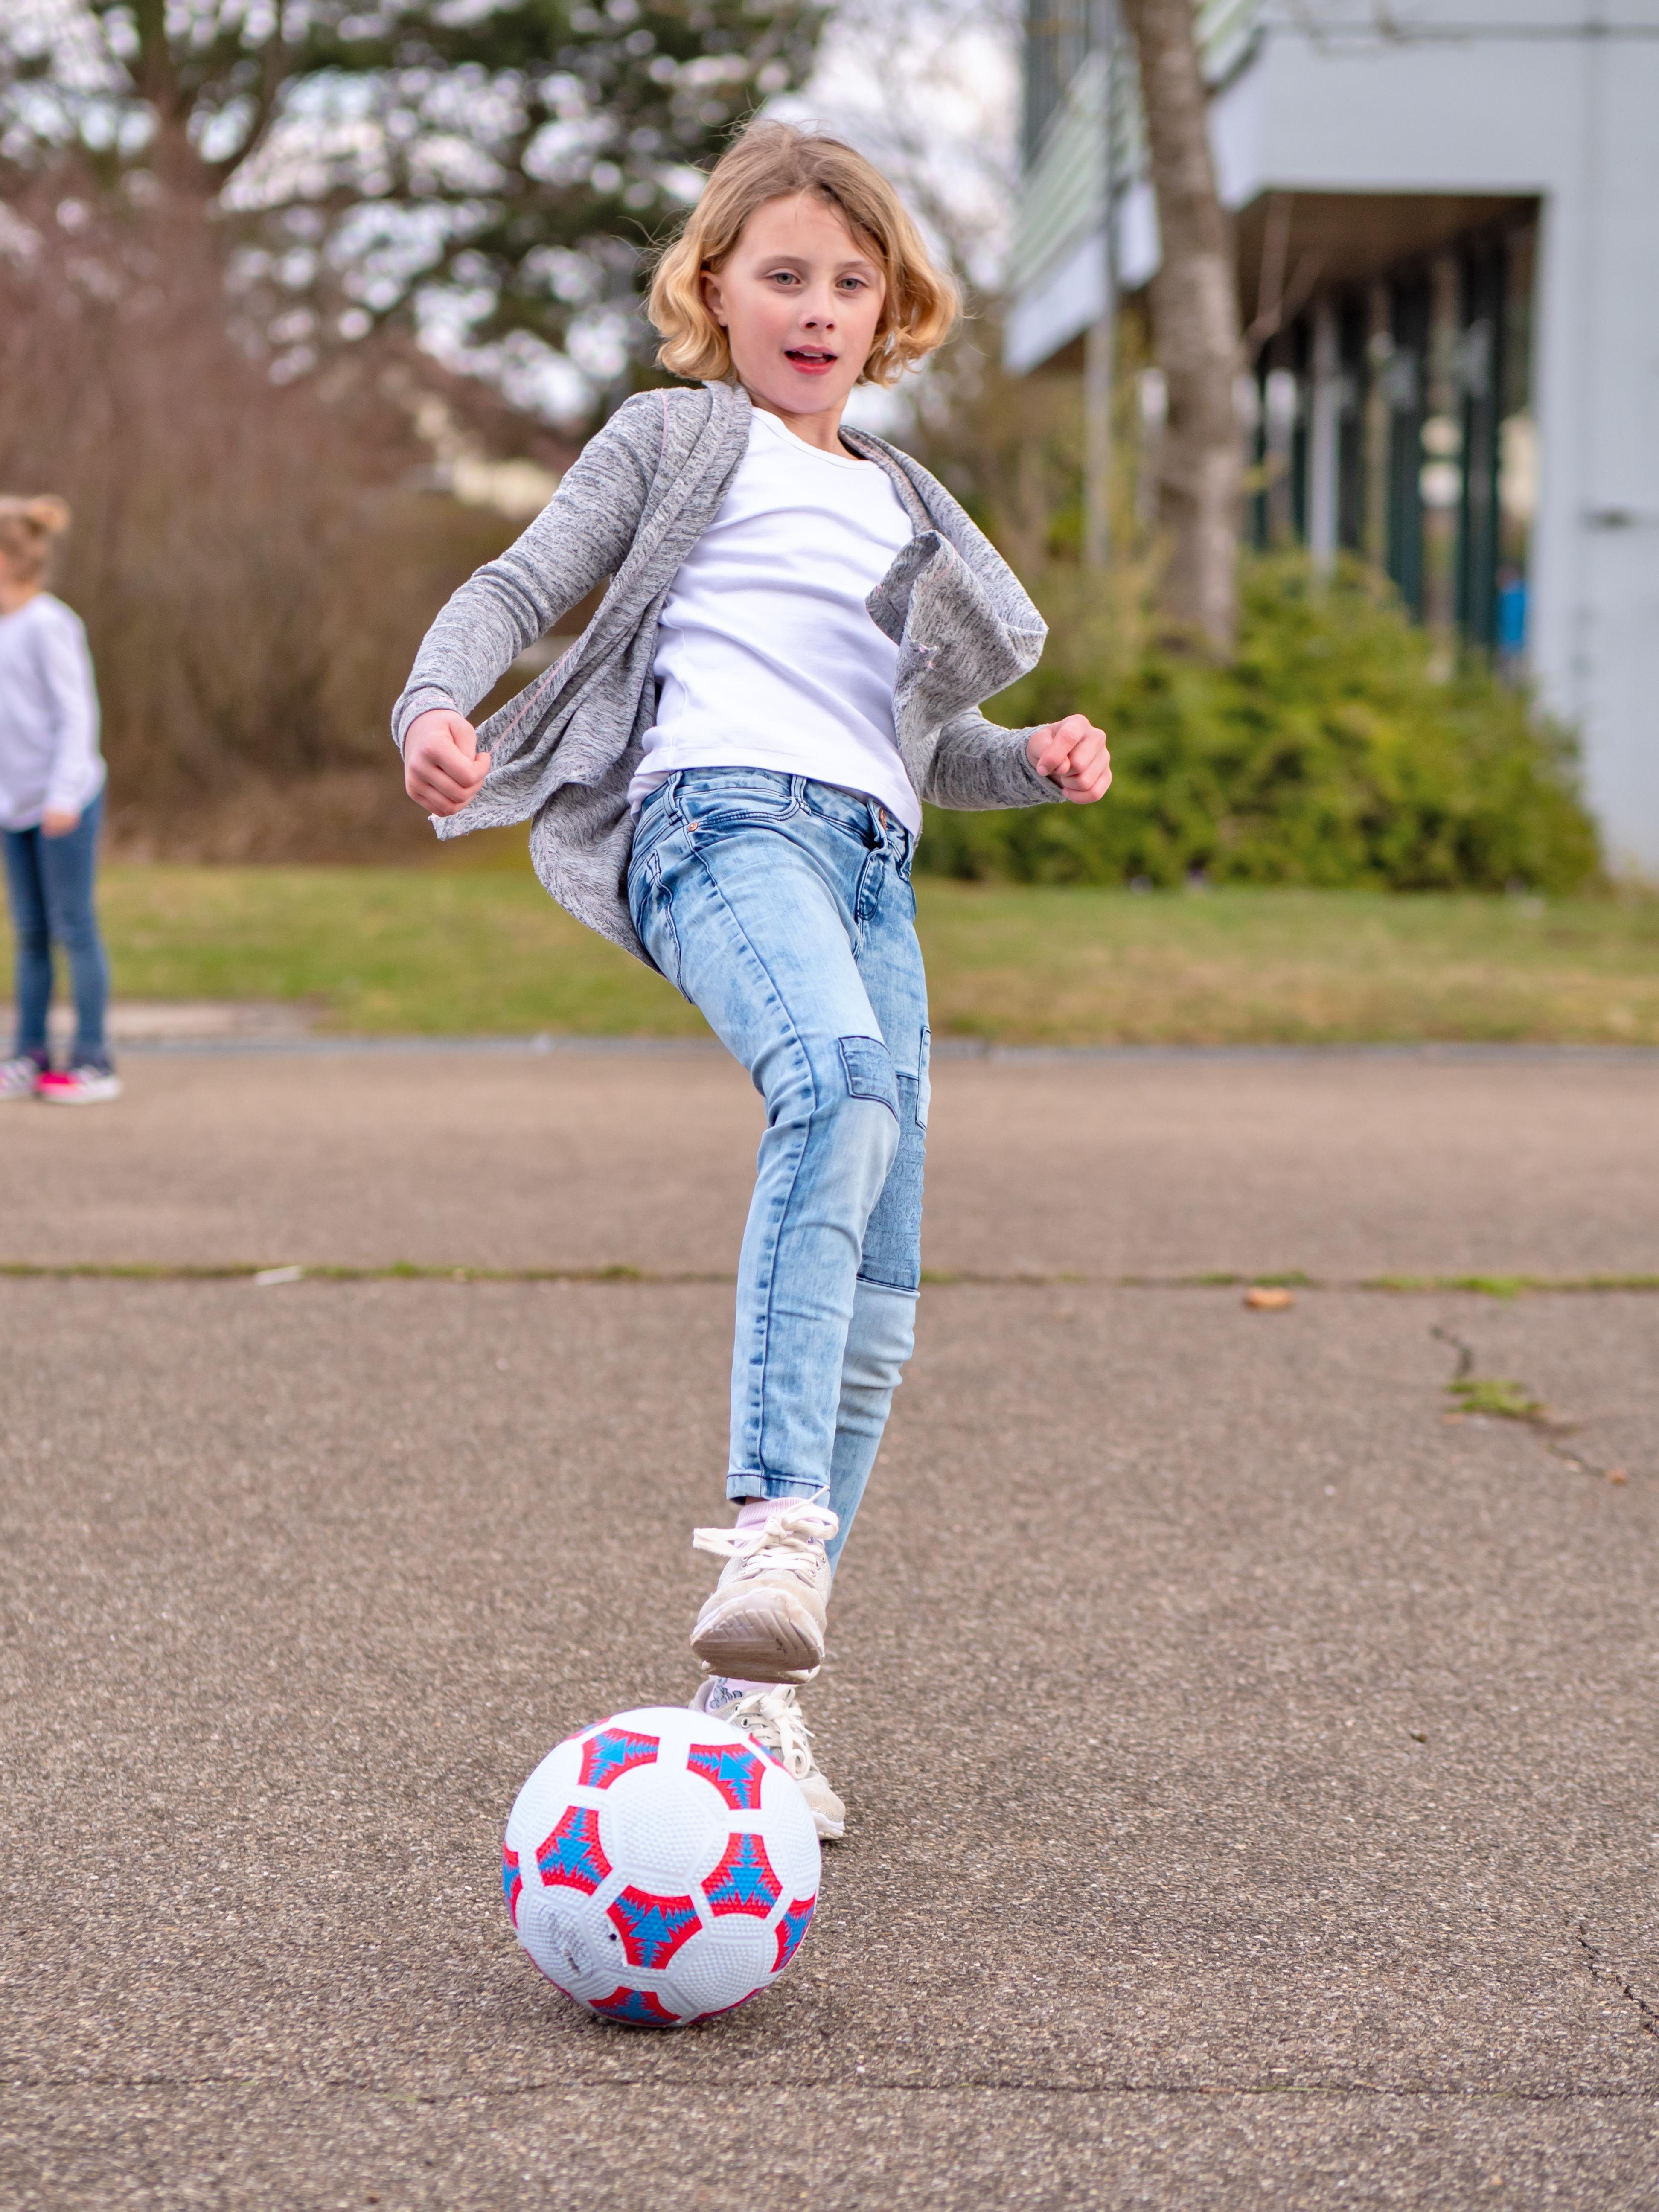 Betzold Sport Bälle robust hochwertige Besonders Fußball Größe - 5, blau Fußbälle in Fußball Schulhof